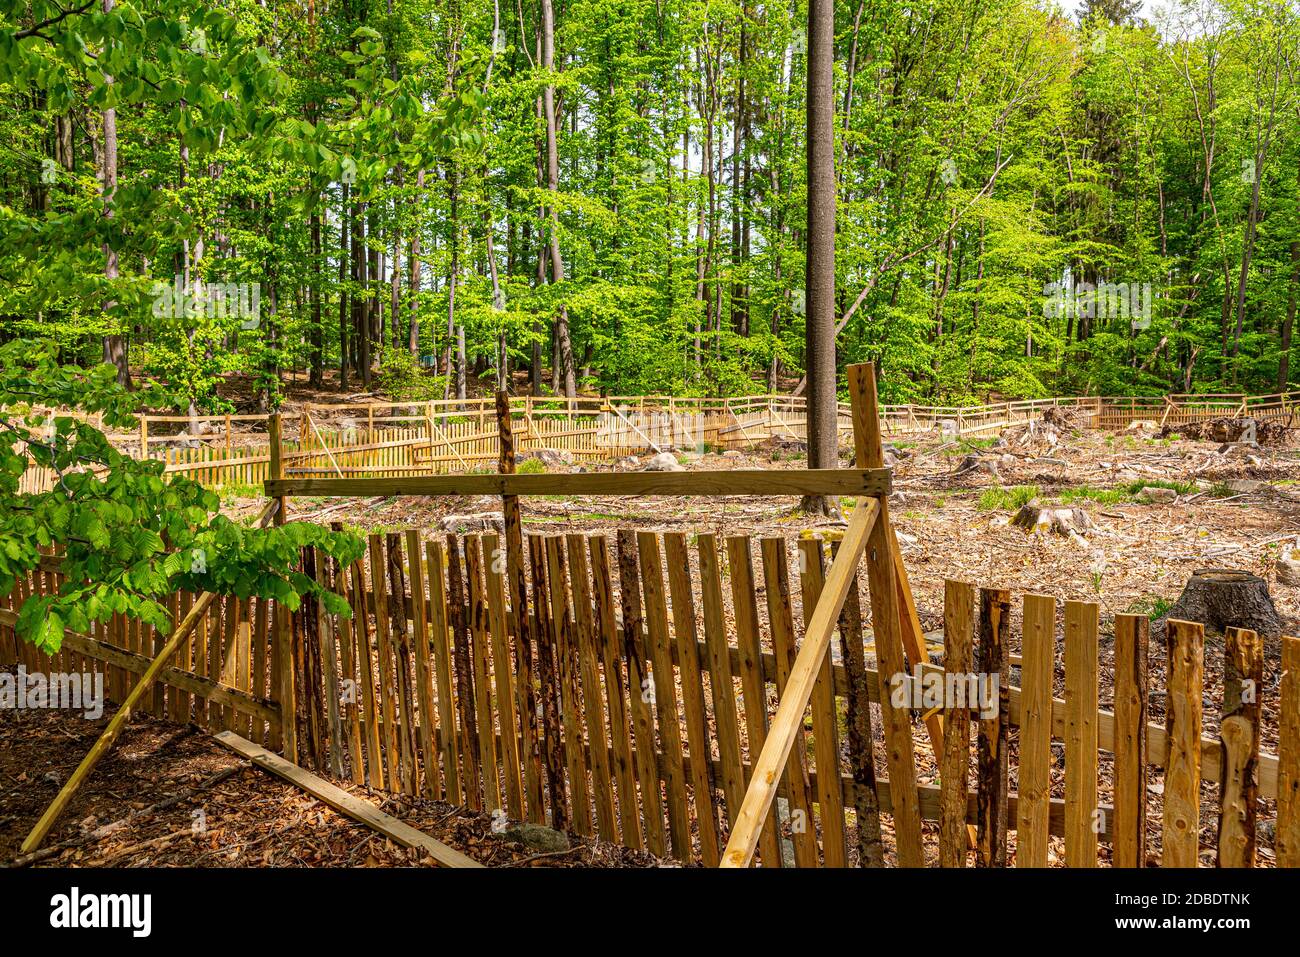 Ein eingezäunter Platz mit neuer Baumbepflanzung in einem Wald, der durch Rindenkäfer beschädigt wurde Stockfoto